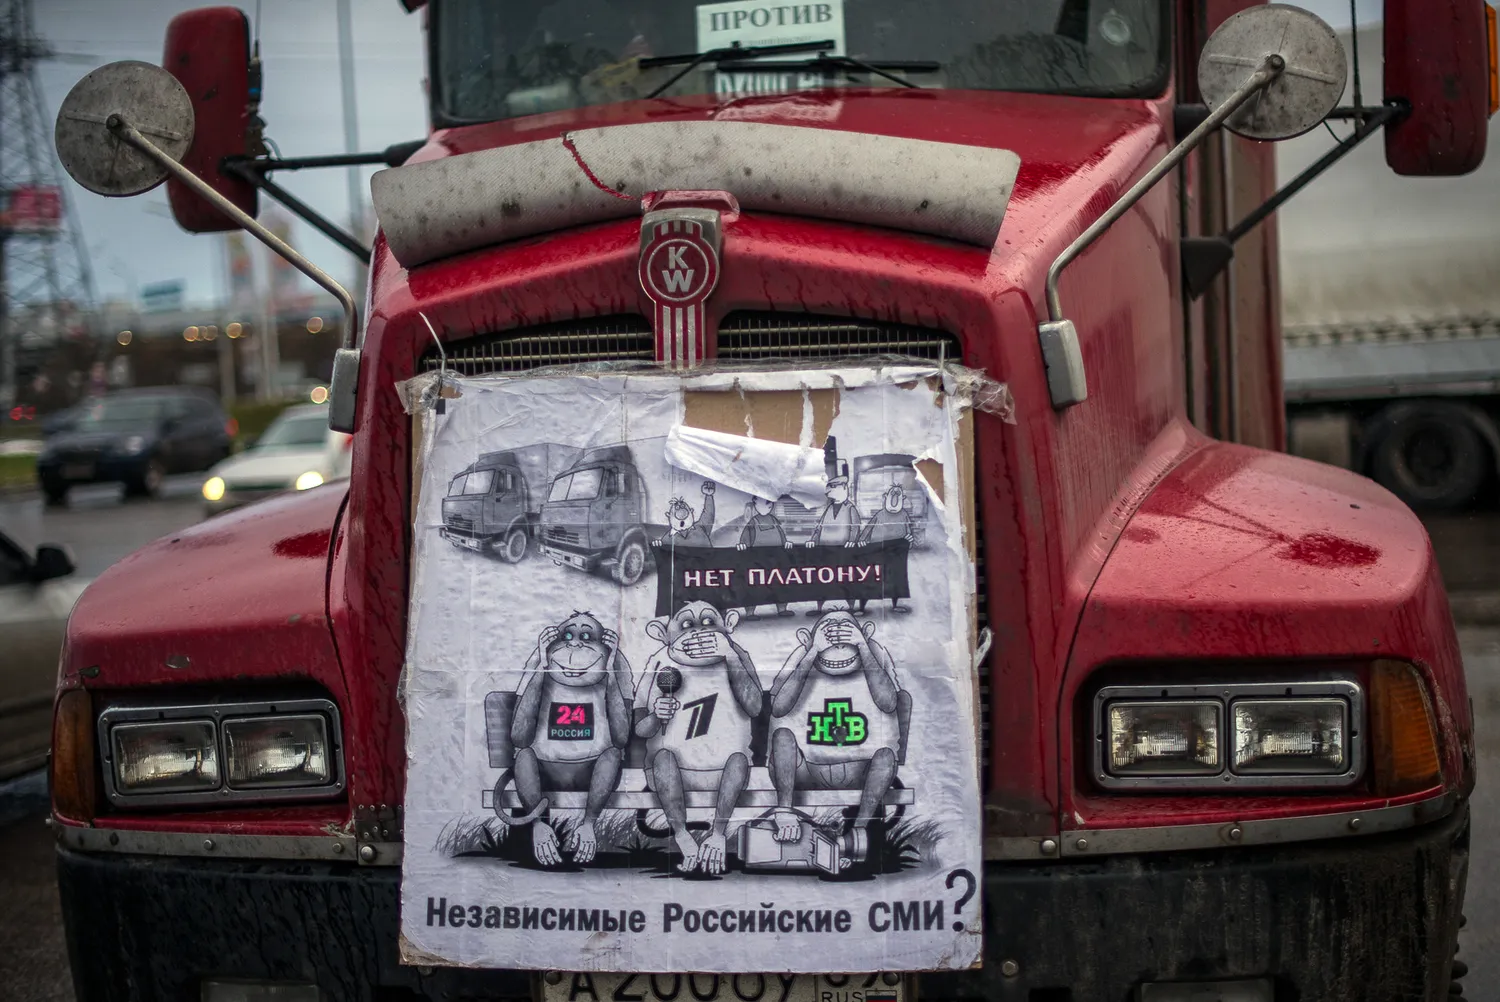 Владимир Путин: плата за проезд грузовиков выведет автотранспортный бизнес из тени 